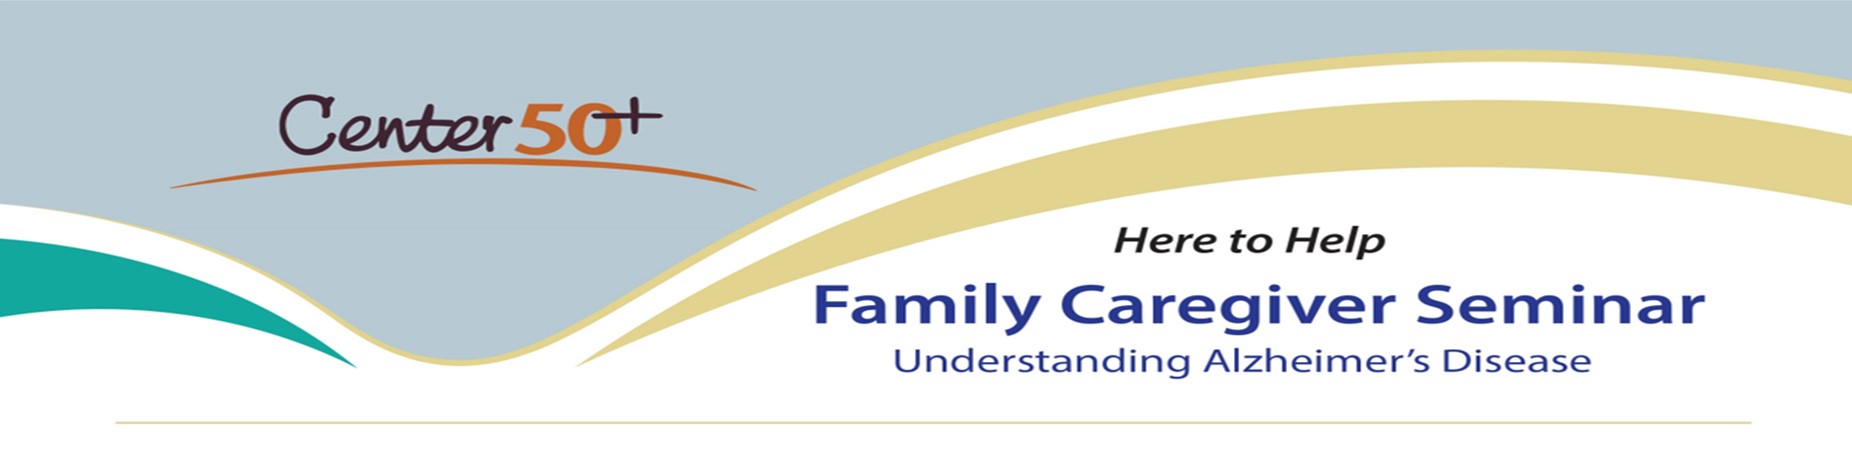 Caregiver Banner